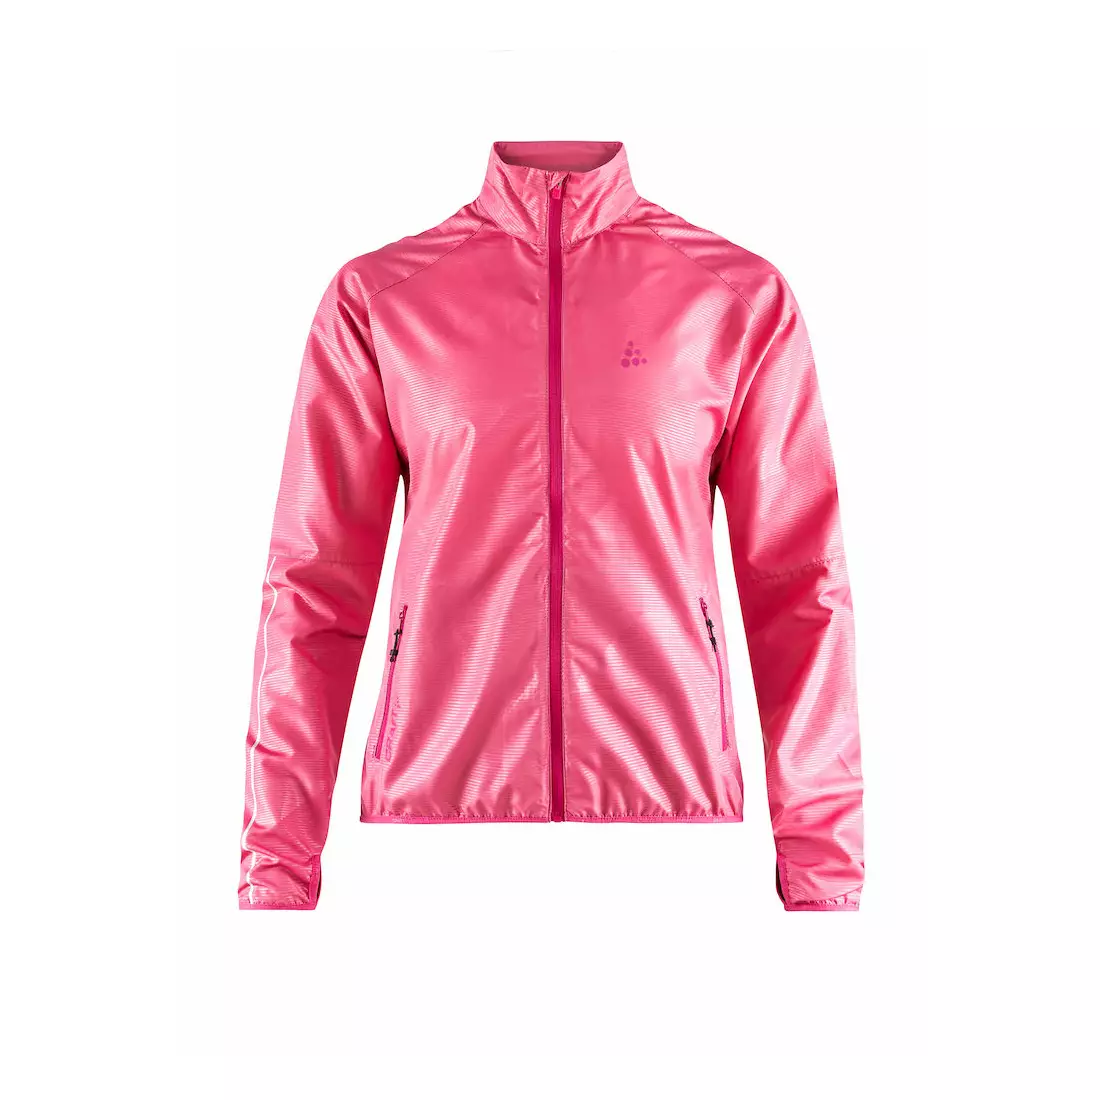 Jachetă pentru alergare CRAFT EAZE, femei, roz 1906401-720000